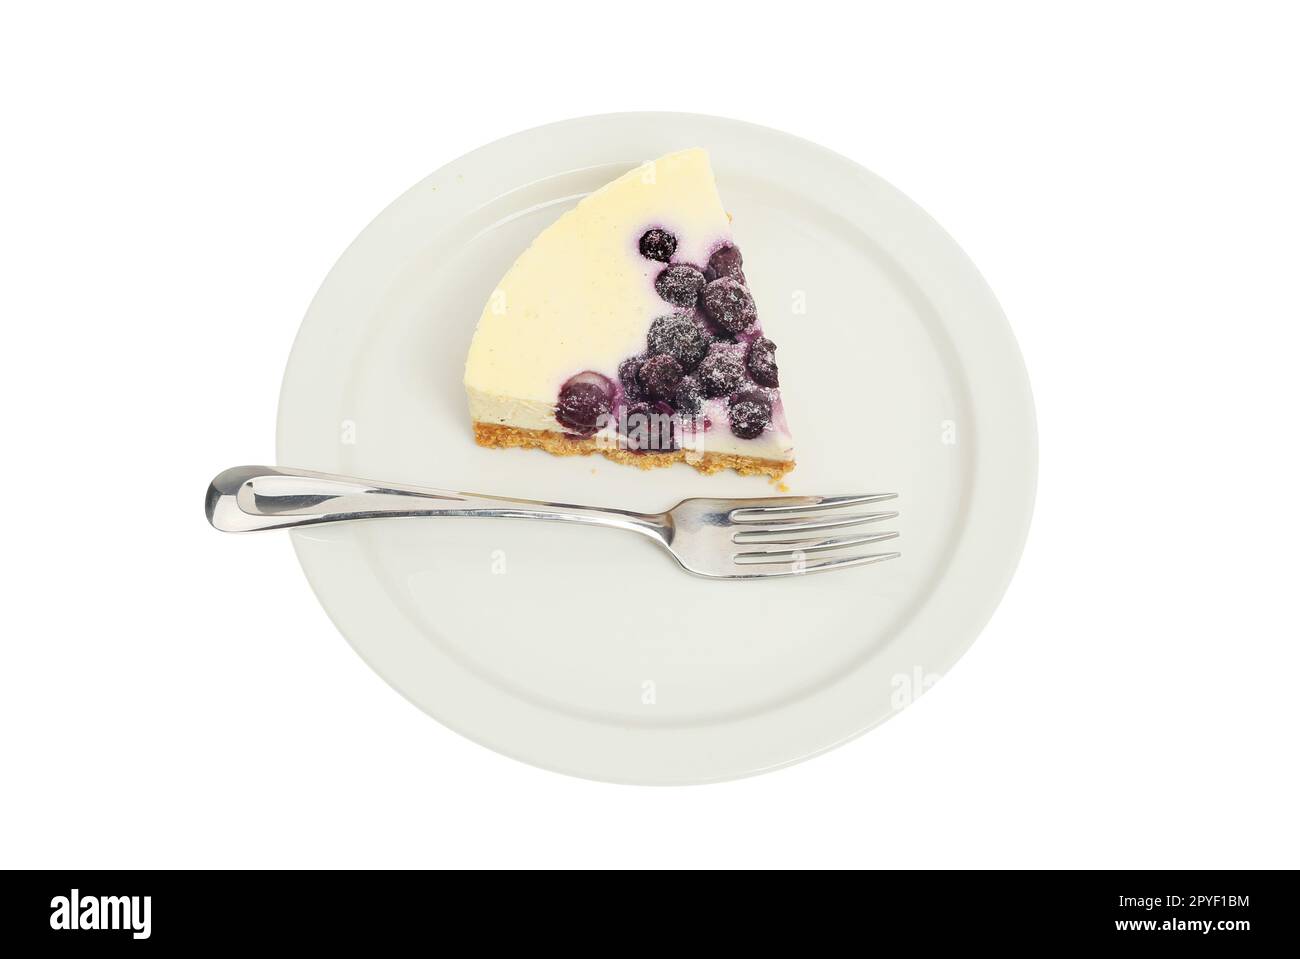 Tranche de cheesecake à la vanille et à la myrtille sur une assiette avec une fourchette isolée contre le blanc Banque D'Images